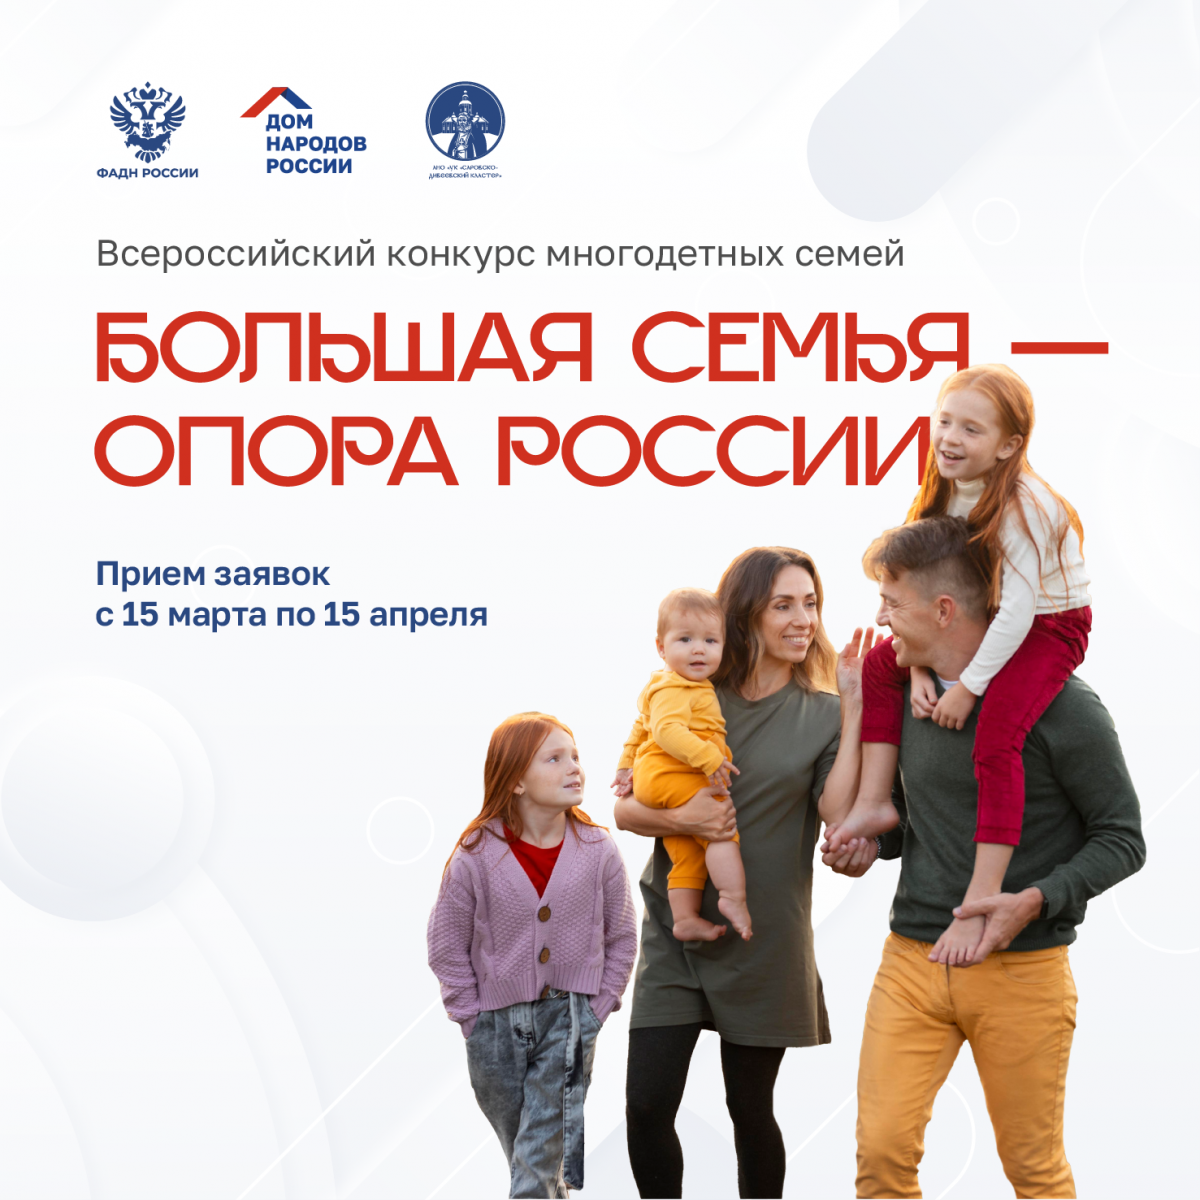 О Всероссийском конкурсе многодетных семей «Большая семья - опора России»